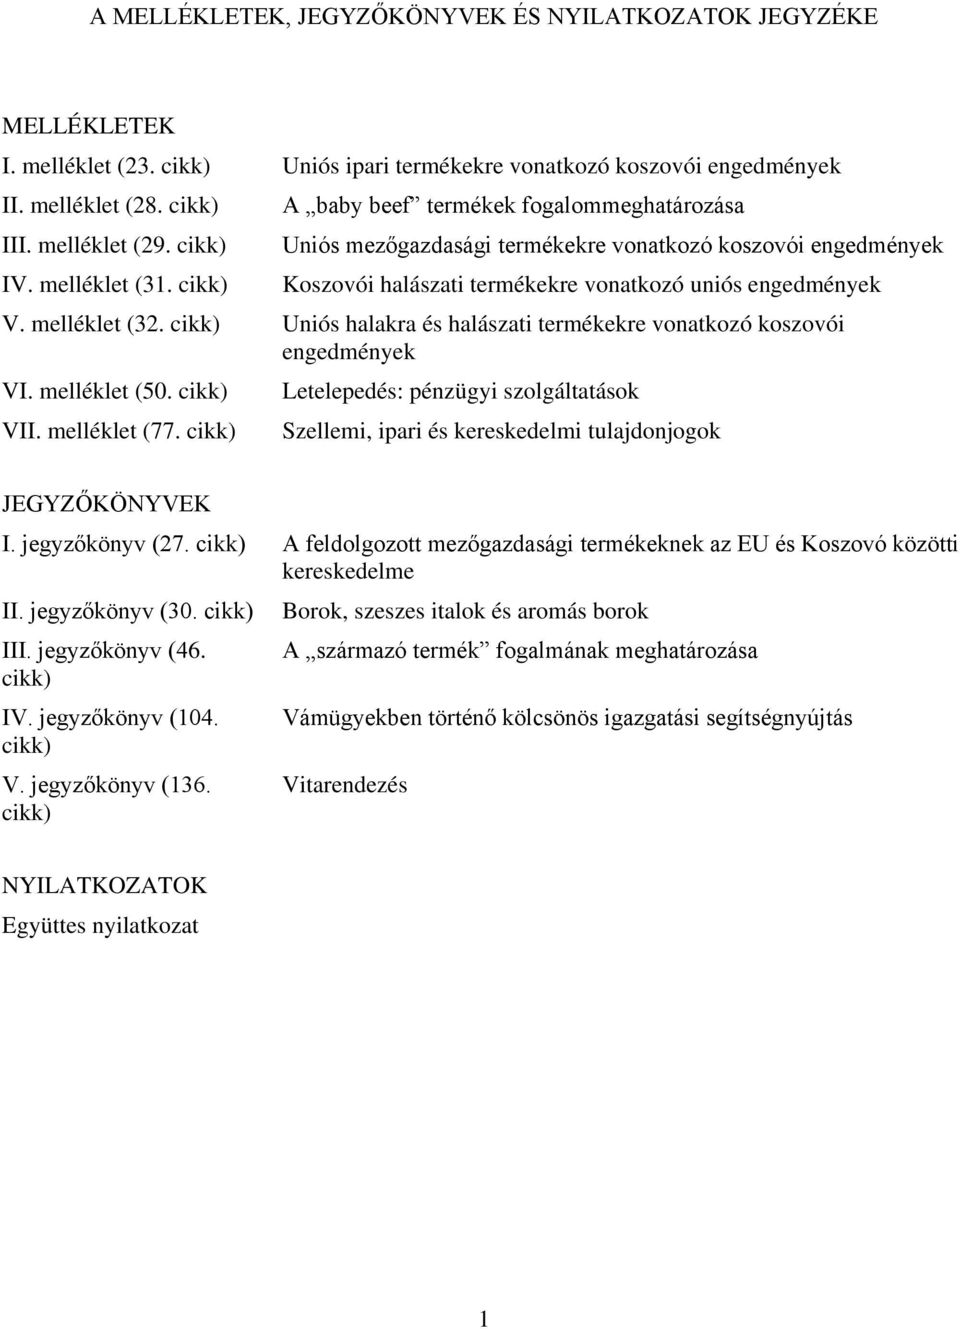 cikk) Uniós halakra és halászati termékekre vonatkozó koszovói engedmények VI. melléklet (50. cikk) VII. melléklet (77.